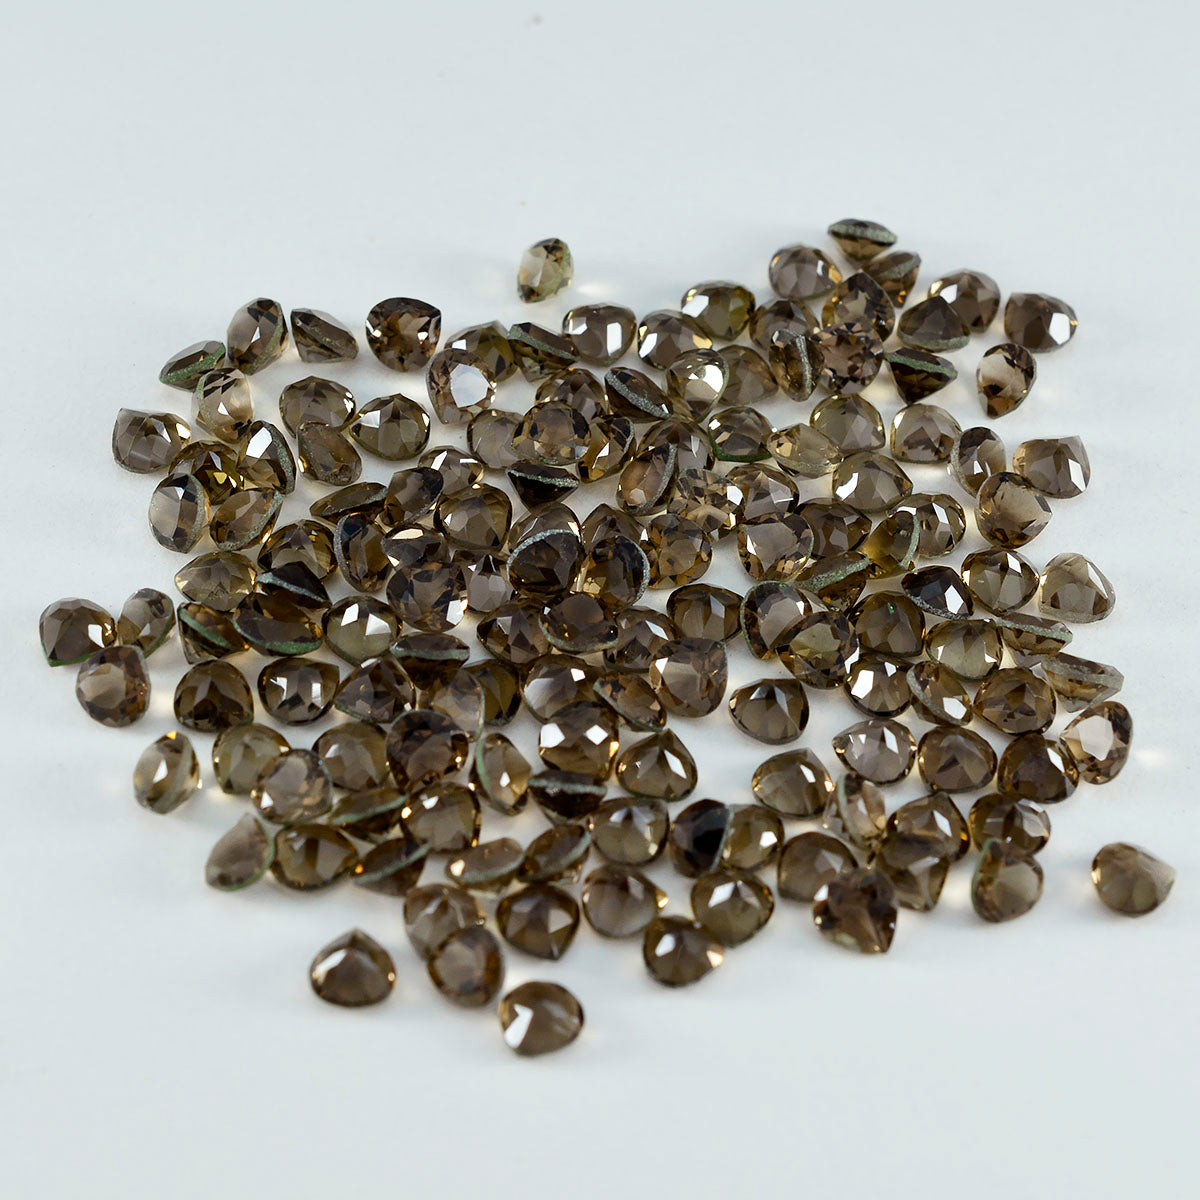 riyogems 1 шт. натуральный коричневый дымчатый кварц ограненный 4x4 мм в форме сердца драгоценные камни удивительного качества